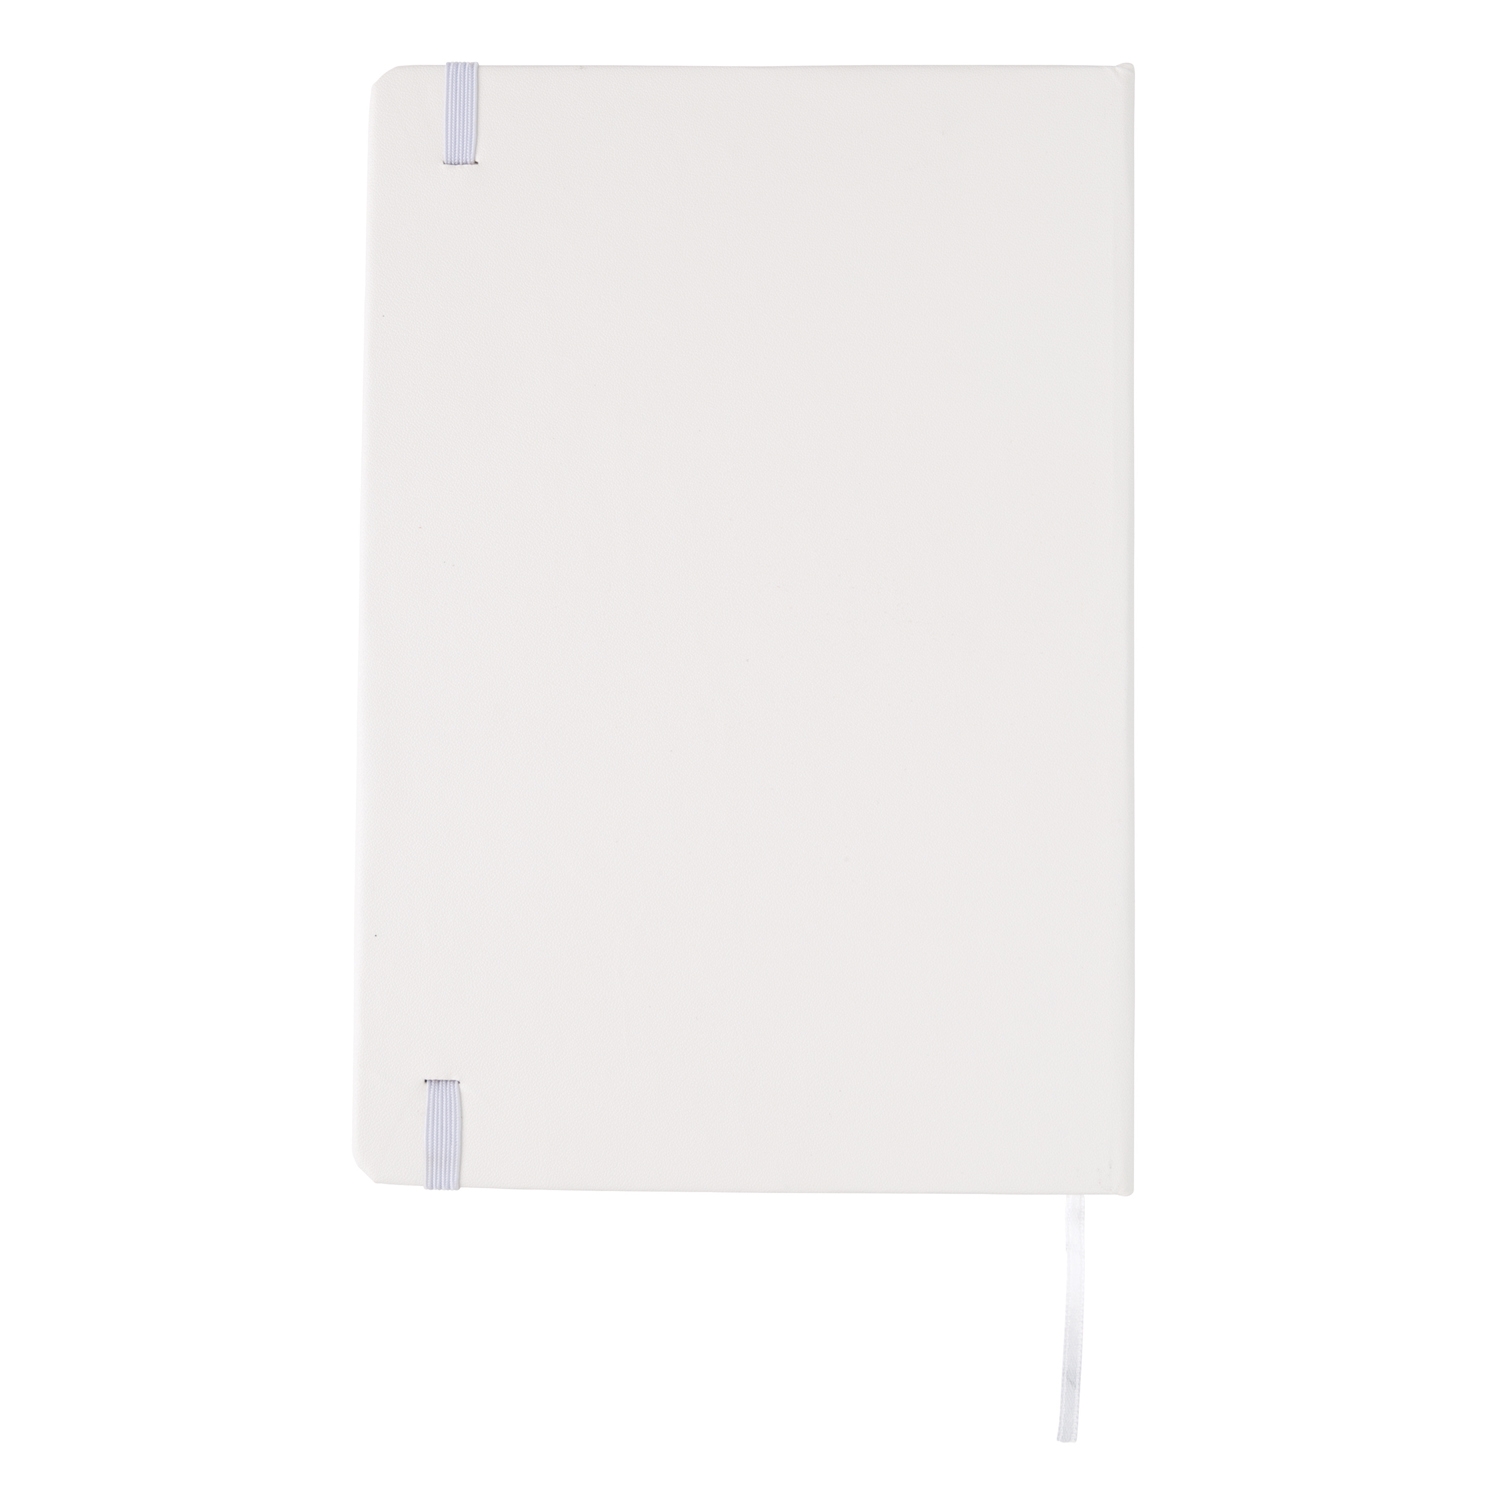 Блокнот для записей Basic в твердой обложке, А5, белый, бумага